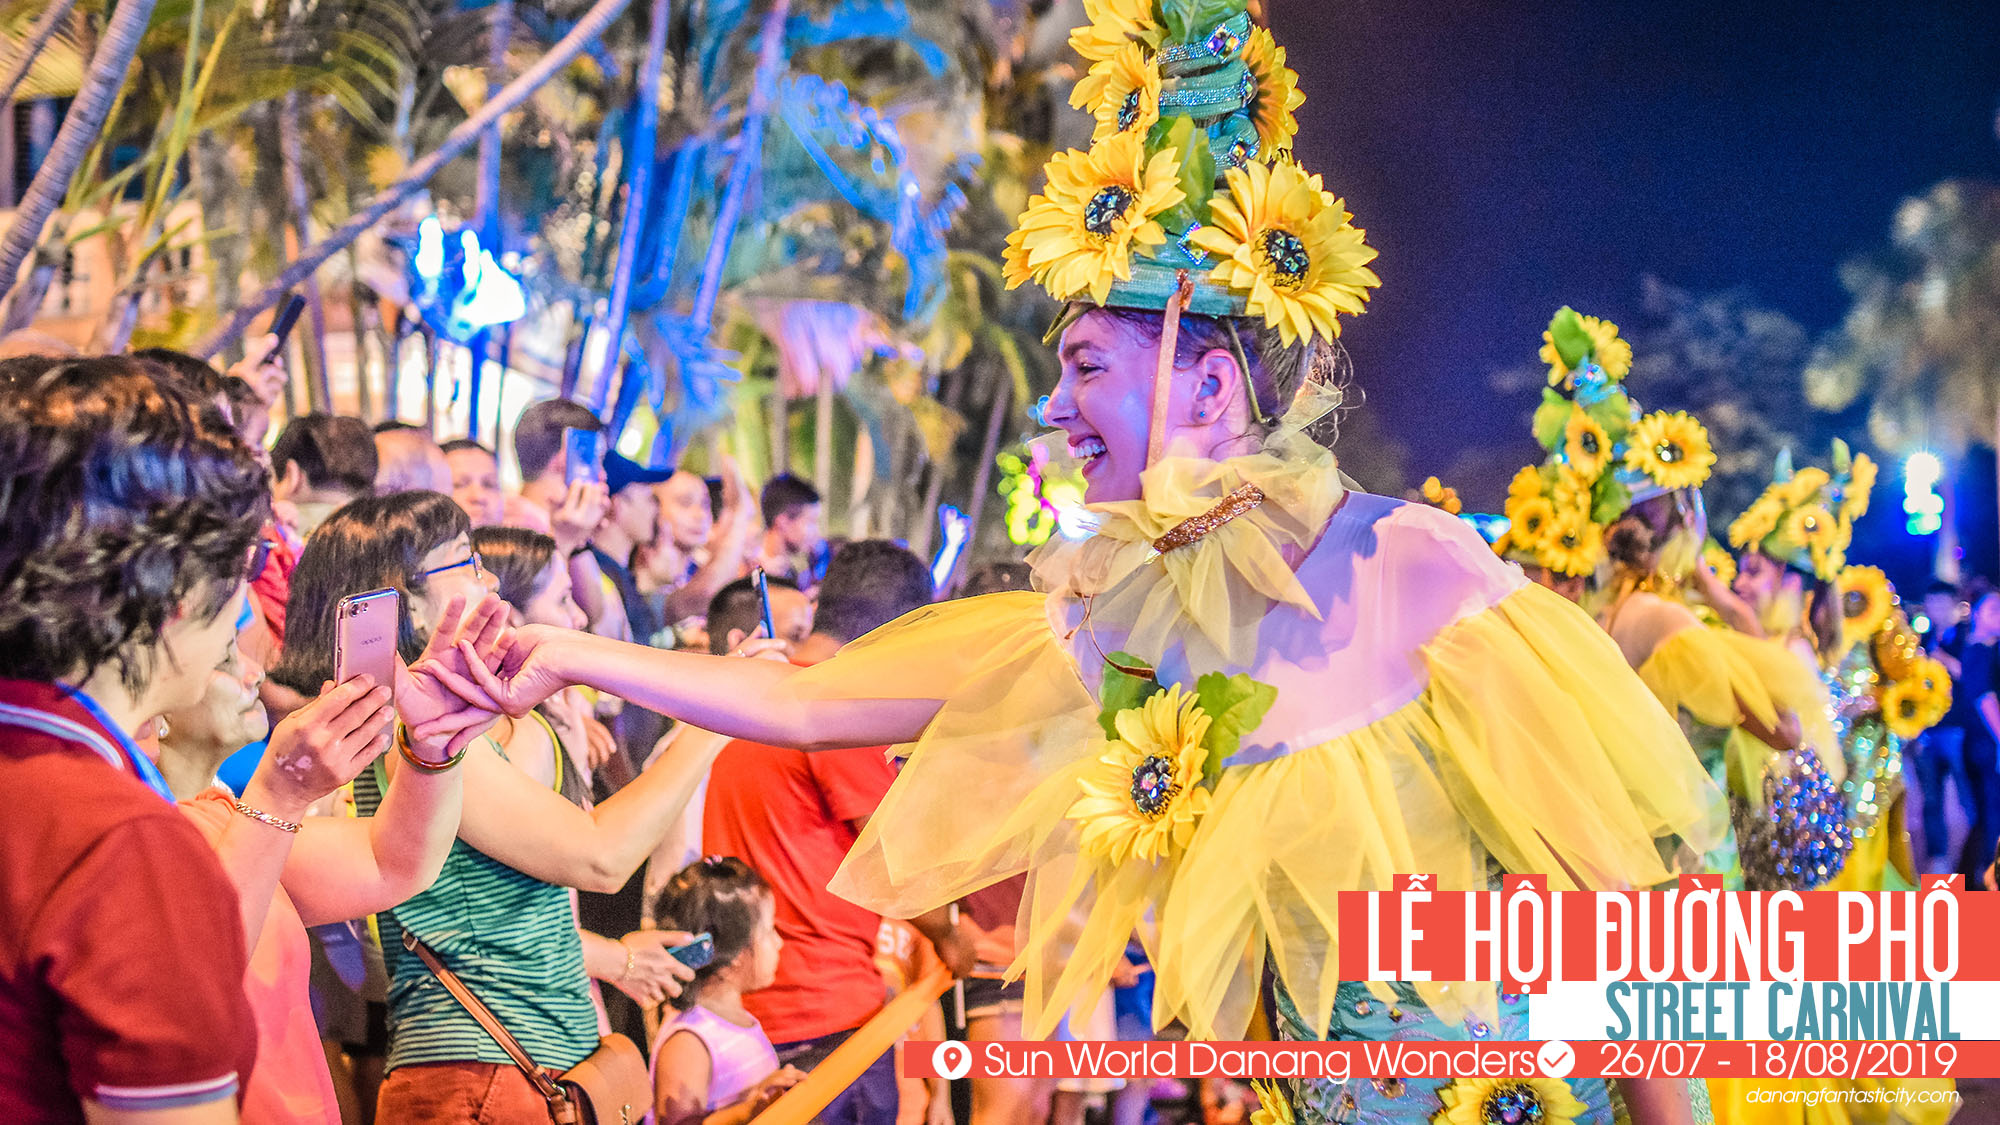 Le Hoi Duong Pho Street Carnival Tai Sun World Danang Wonders Danang Fantasticity Com